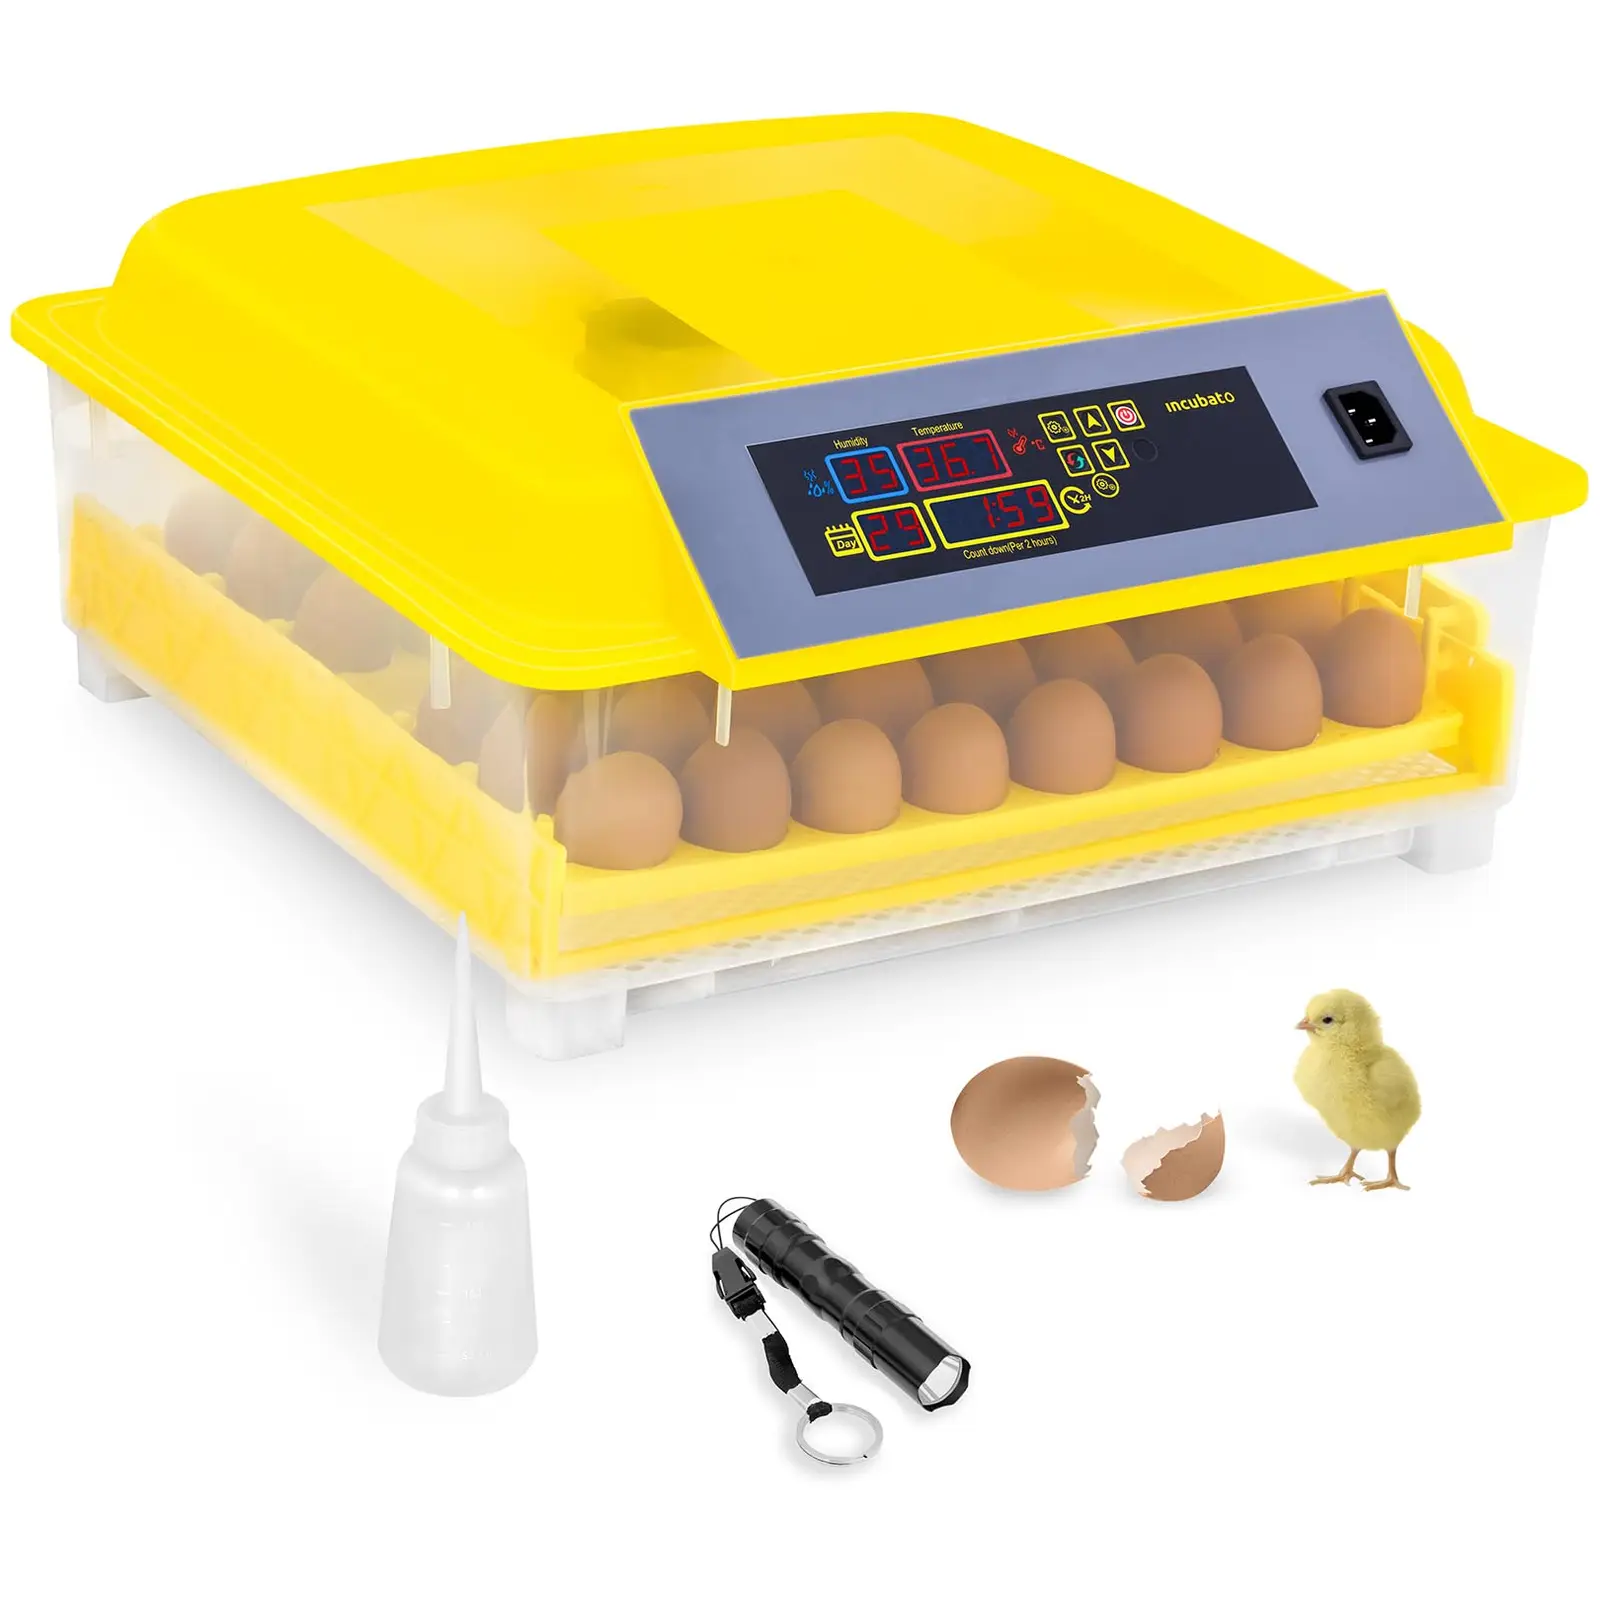 B-varer Rugemaskin - 48 egg - Inkl. egglampe og vanndispenser - Helautomatisk